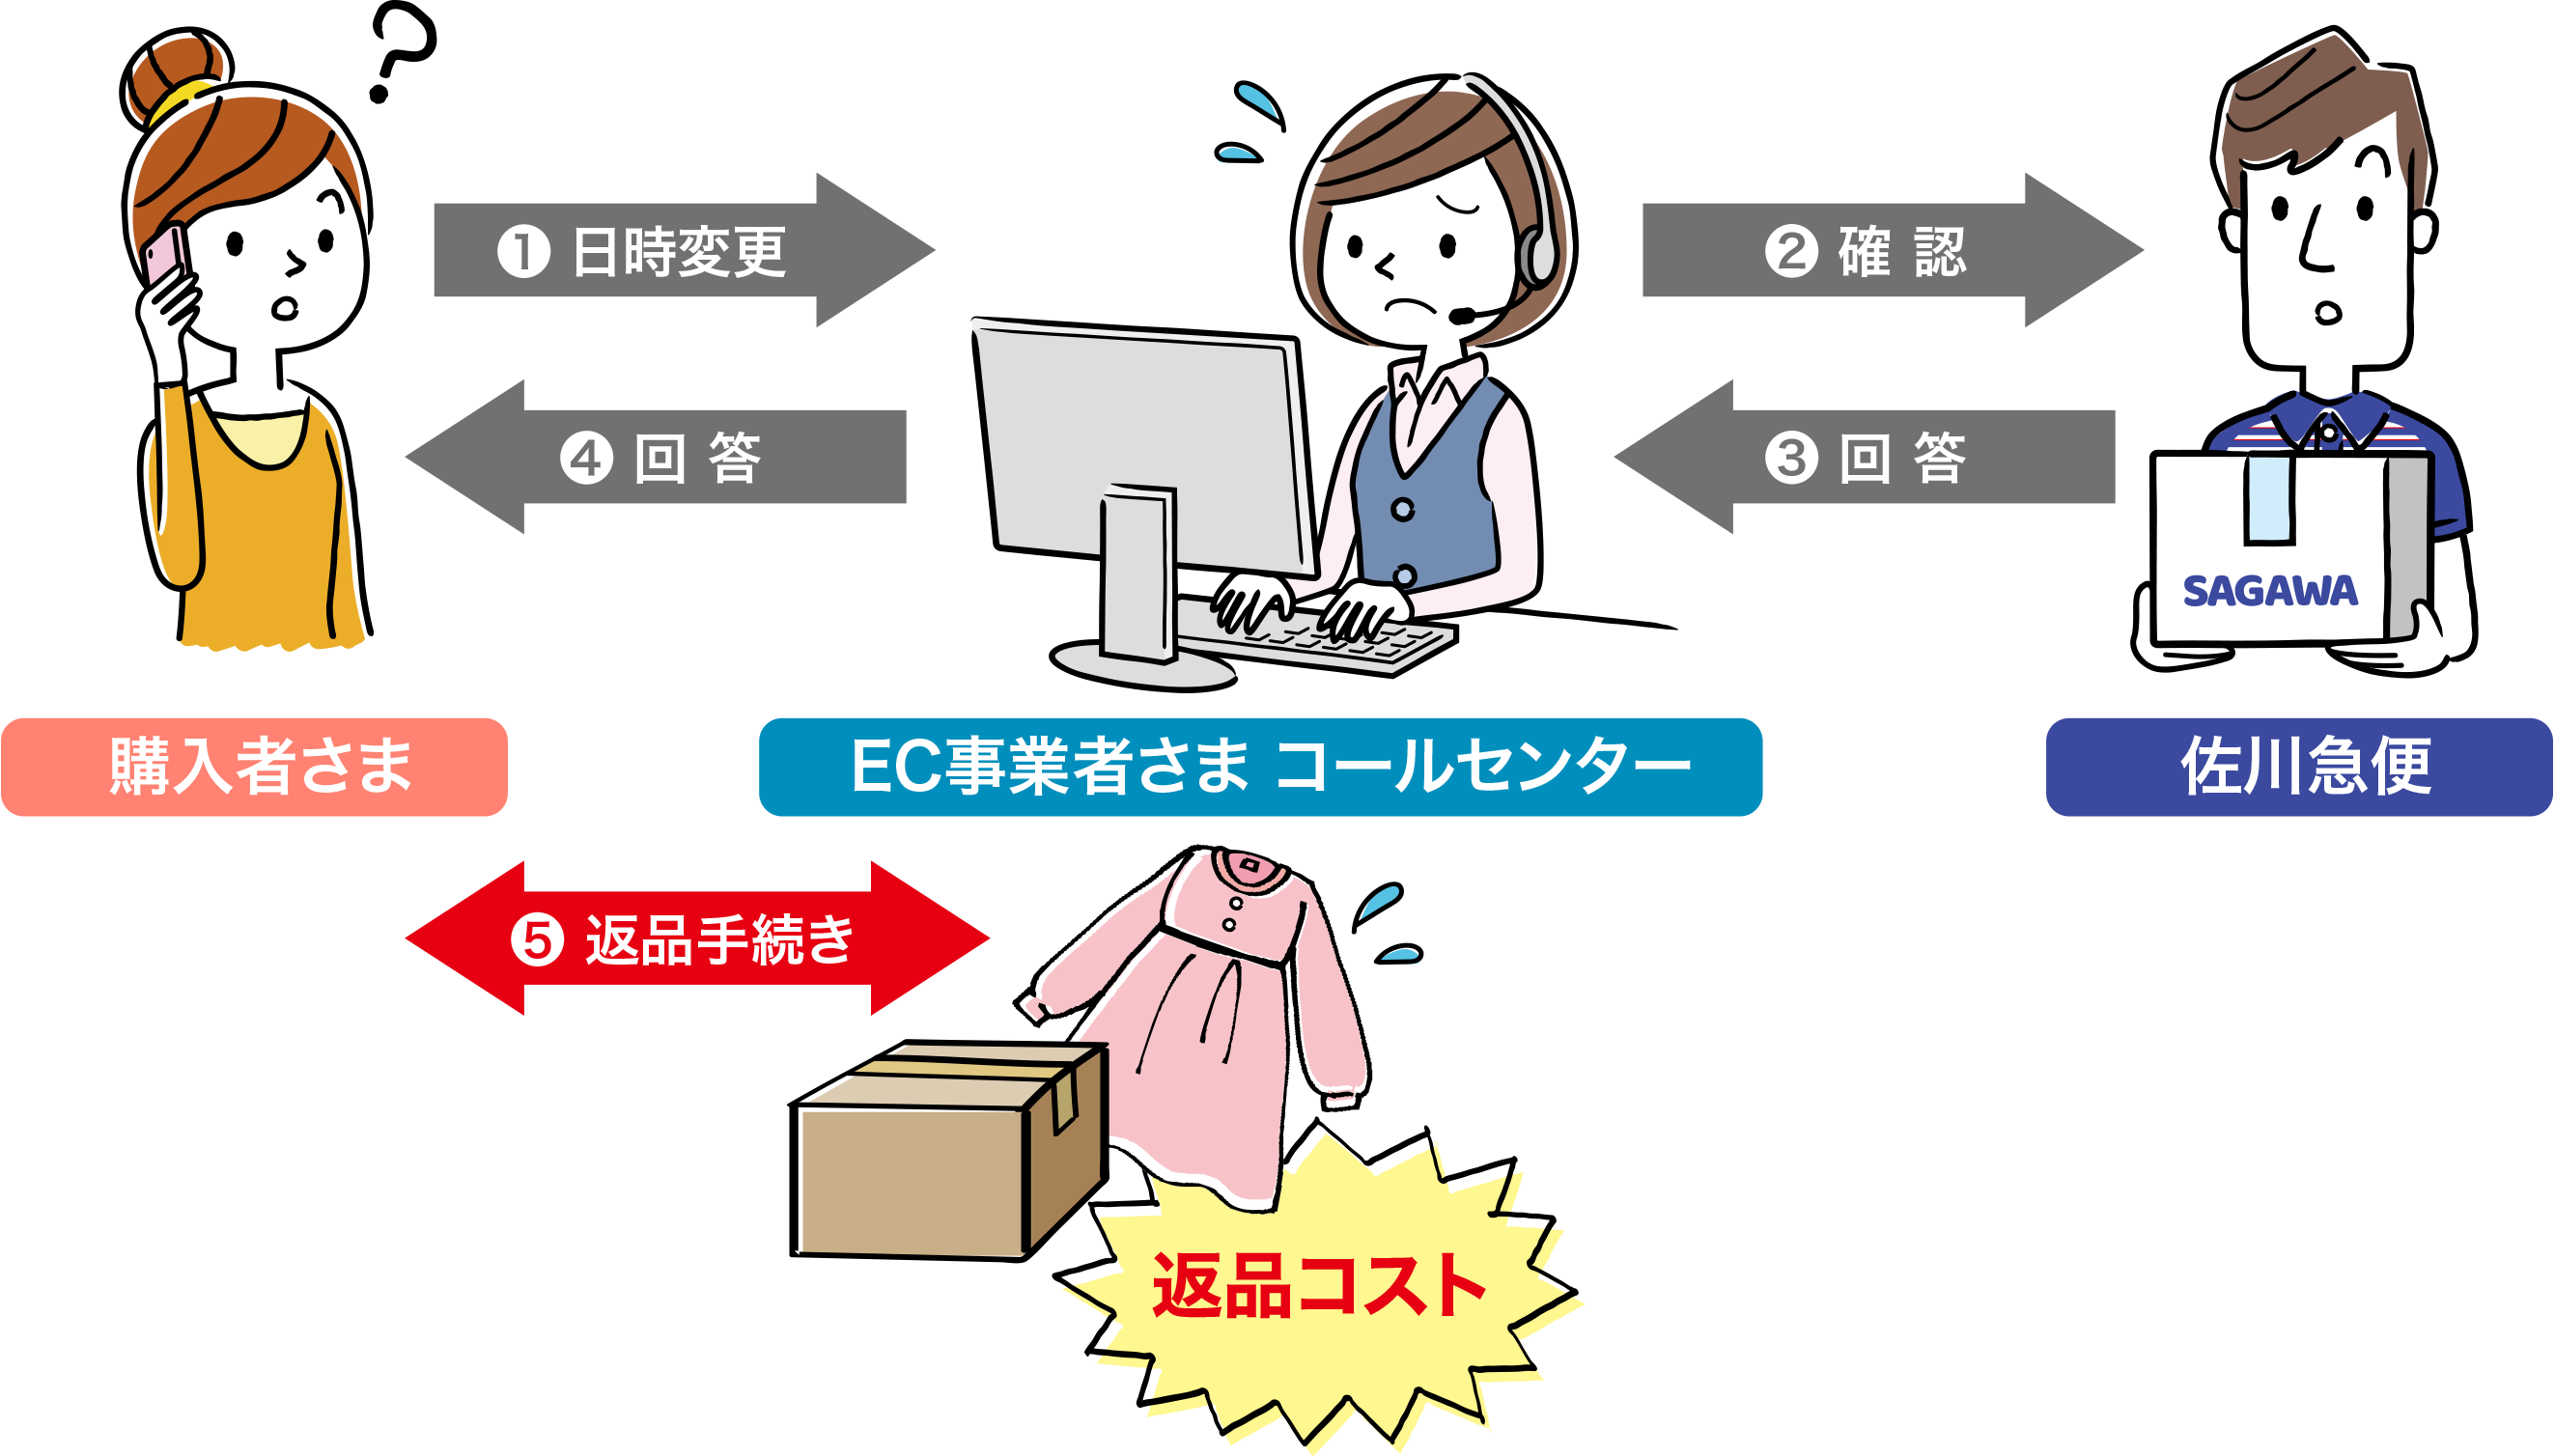 購入者さま～EC事業者さまコールセンター～佐川急便間で日時変更－確認－回答－返品手続きと複雑な手順を行う必要があり、返品コストが増大する可能性があります。